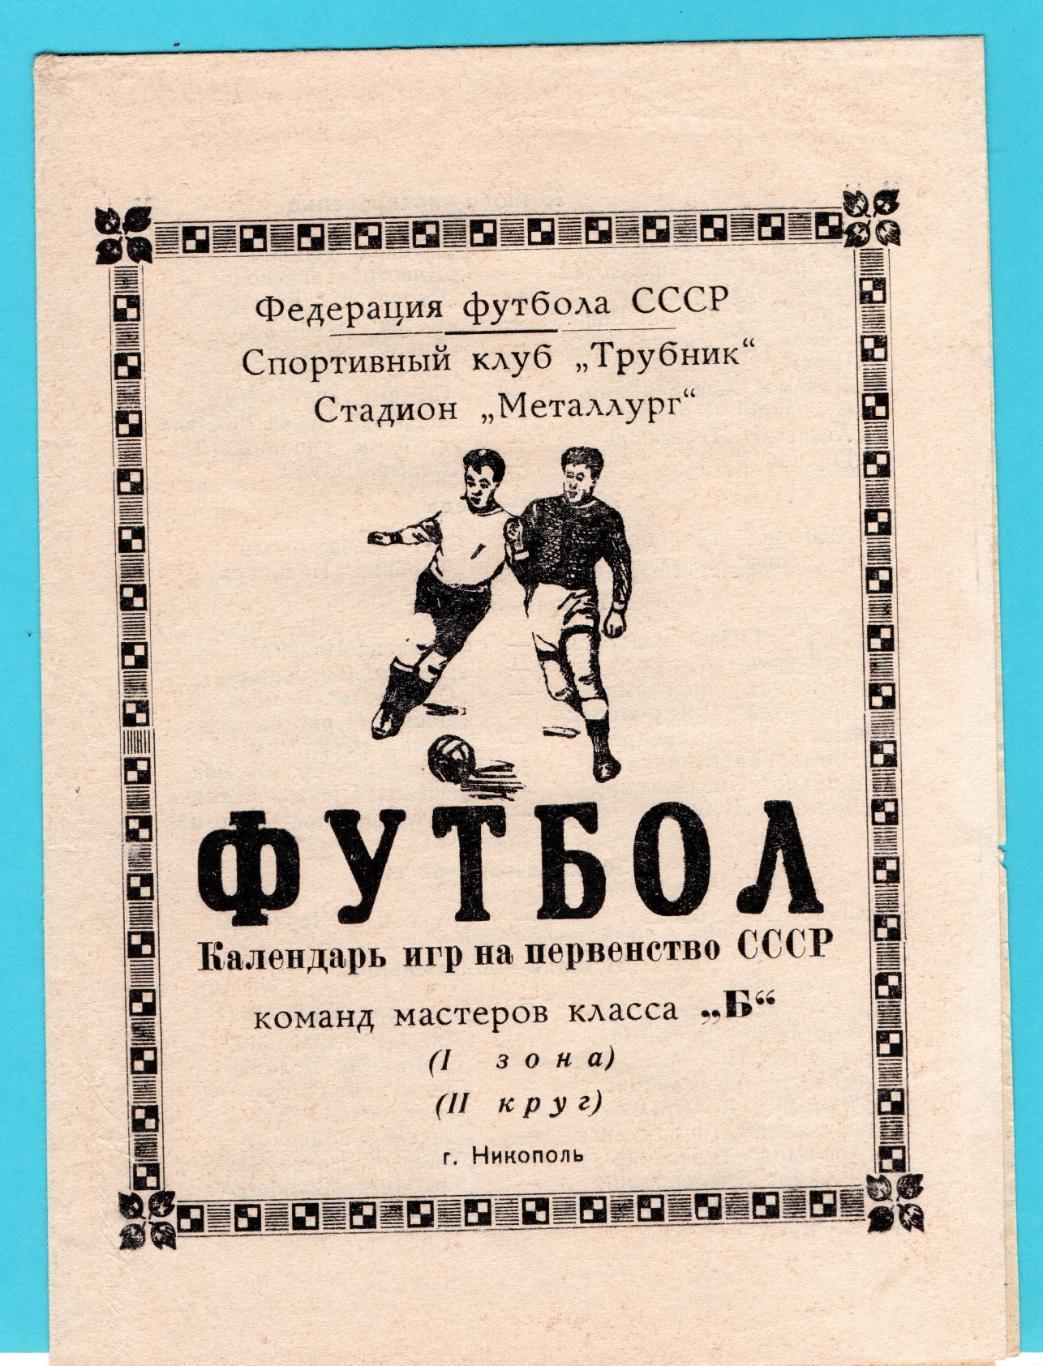 Никополь - 1967 (2-й круг)